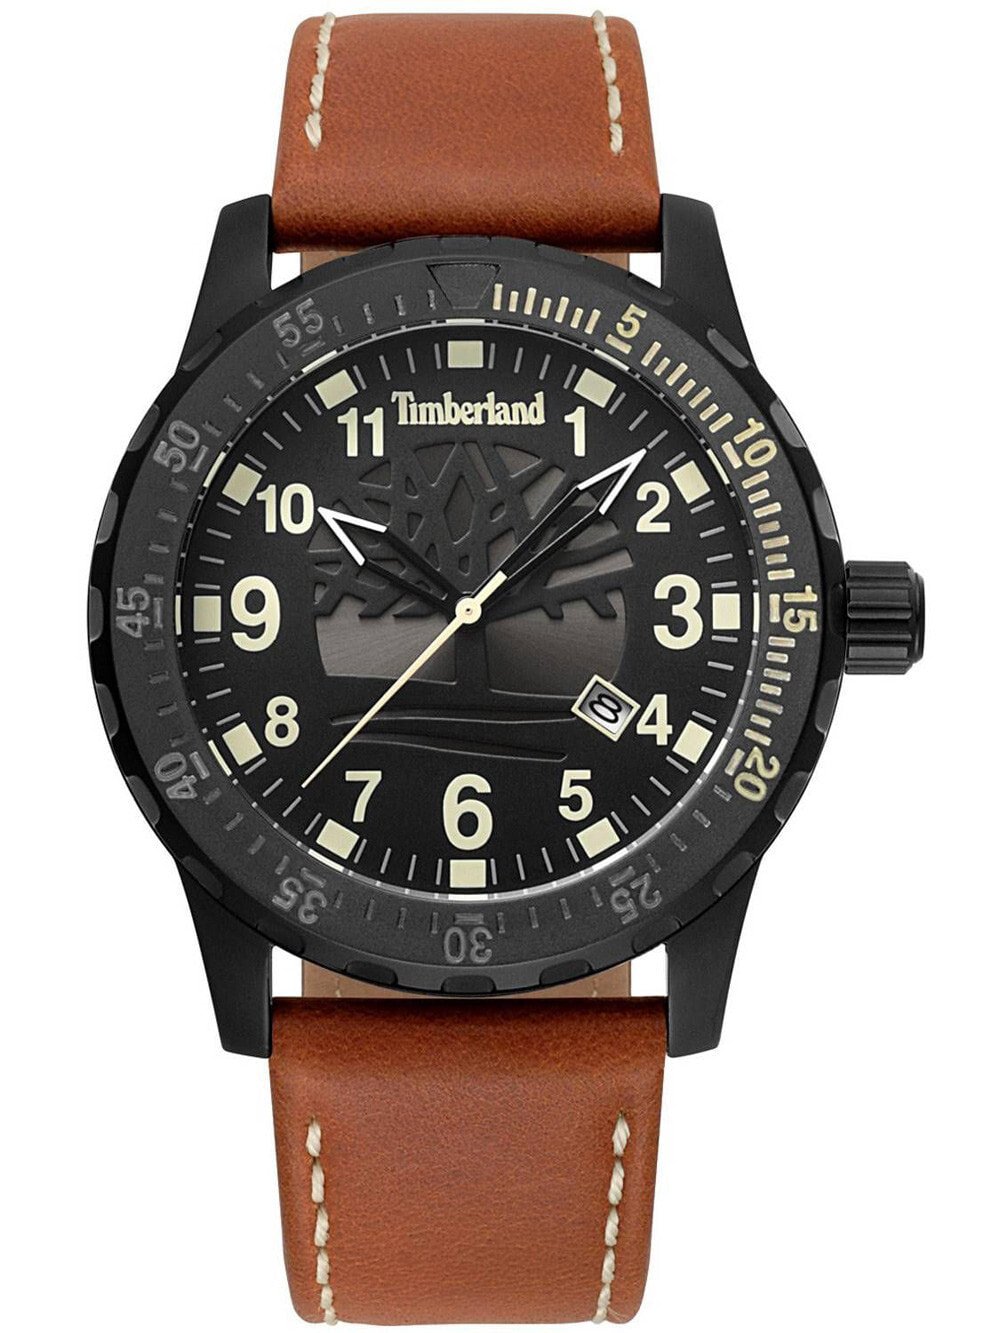 Мужские наручные часы с коричневым кожаным ремешком Timberland TBL15473JLB.02 Clarksburg 46mm 5ATM